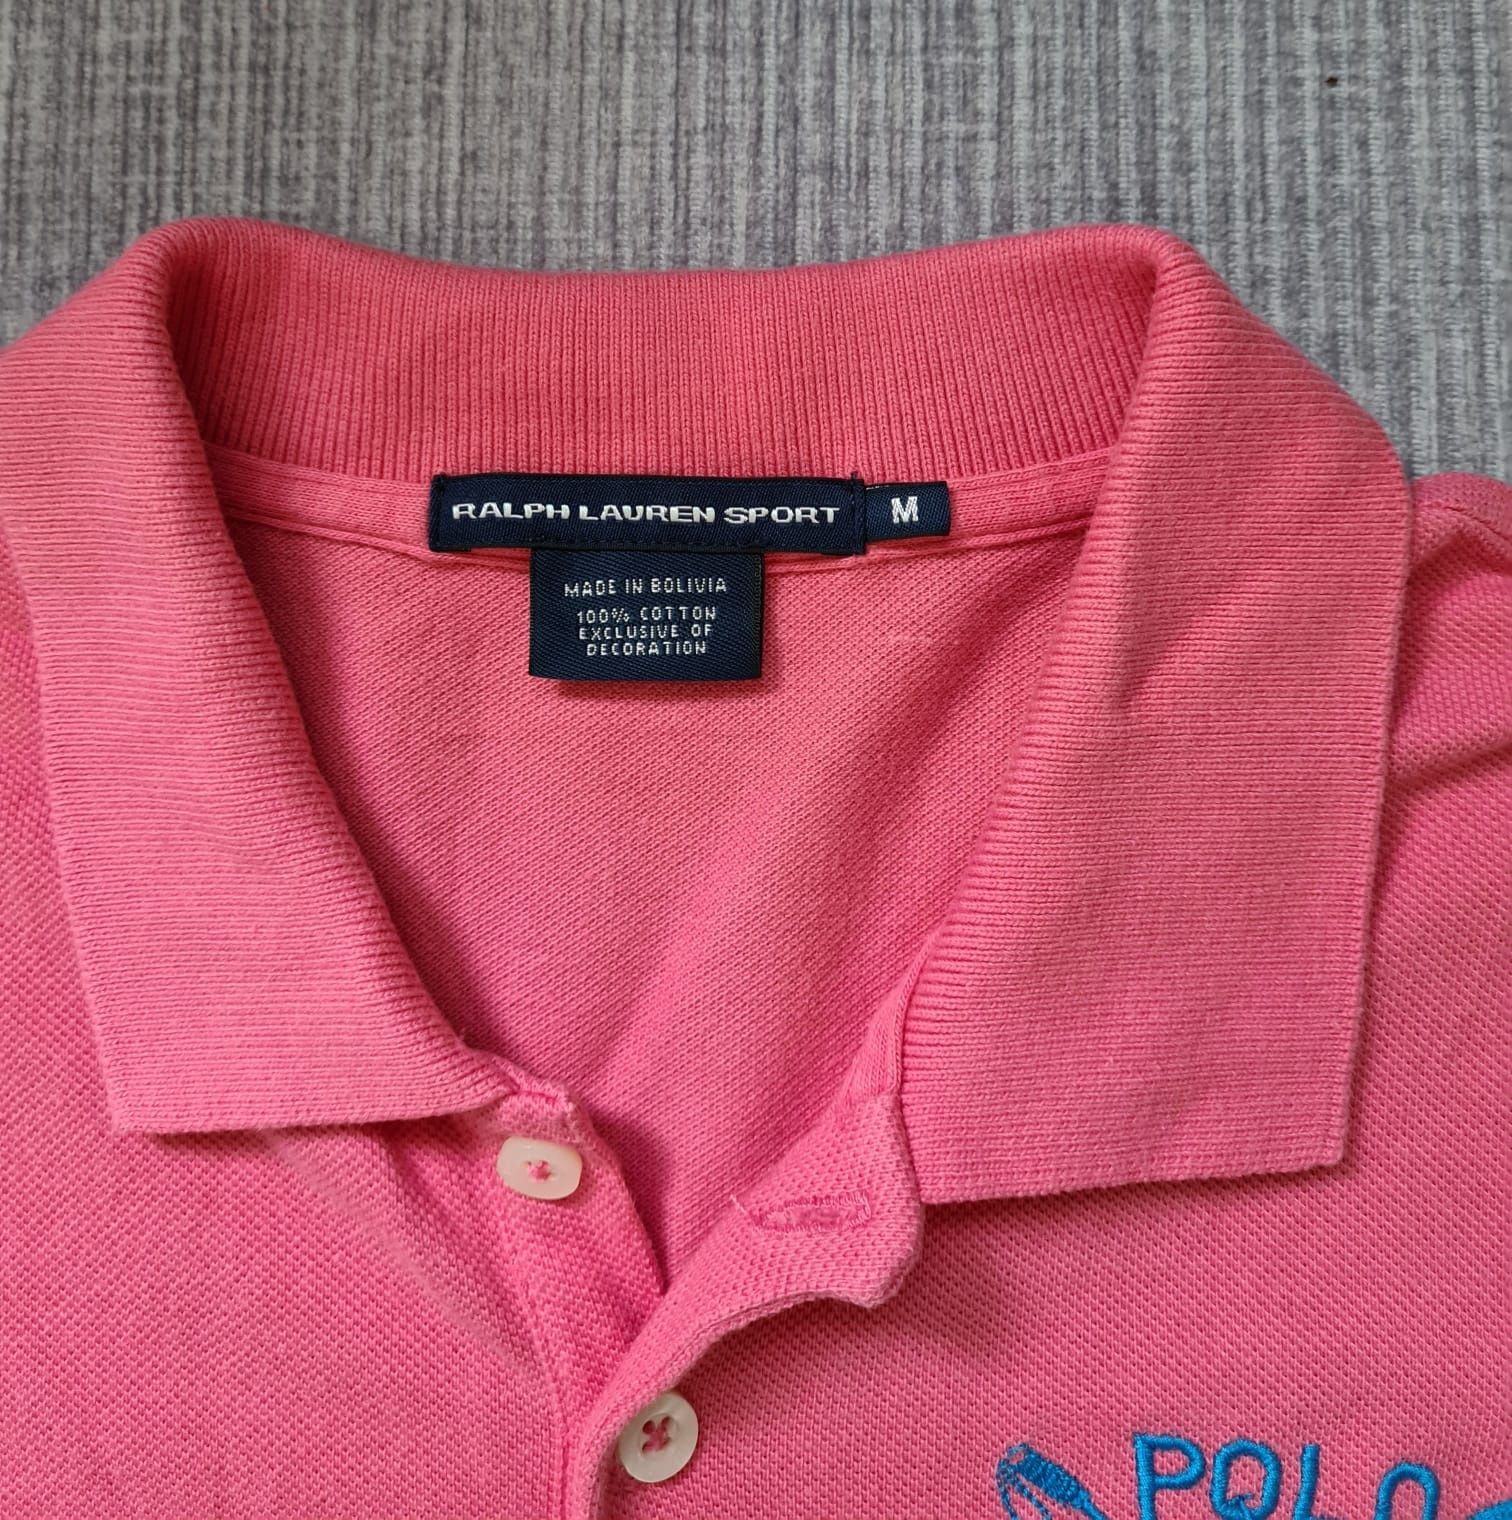 Ralph Lauren damska koszulka polo M różowa T-shirt USA